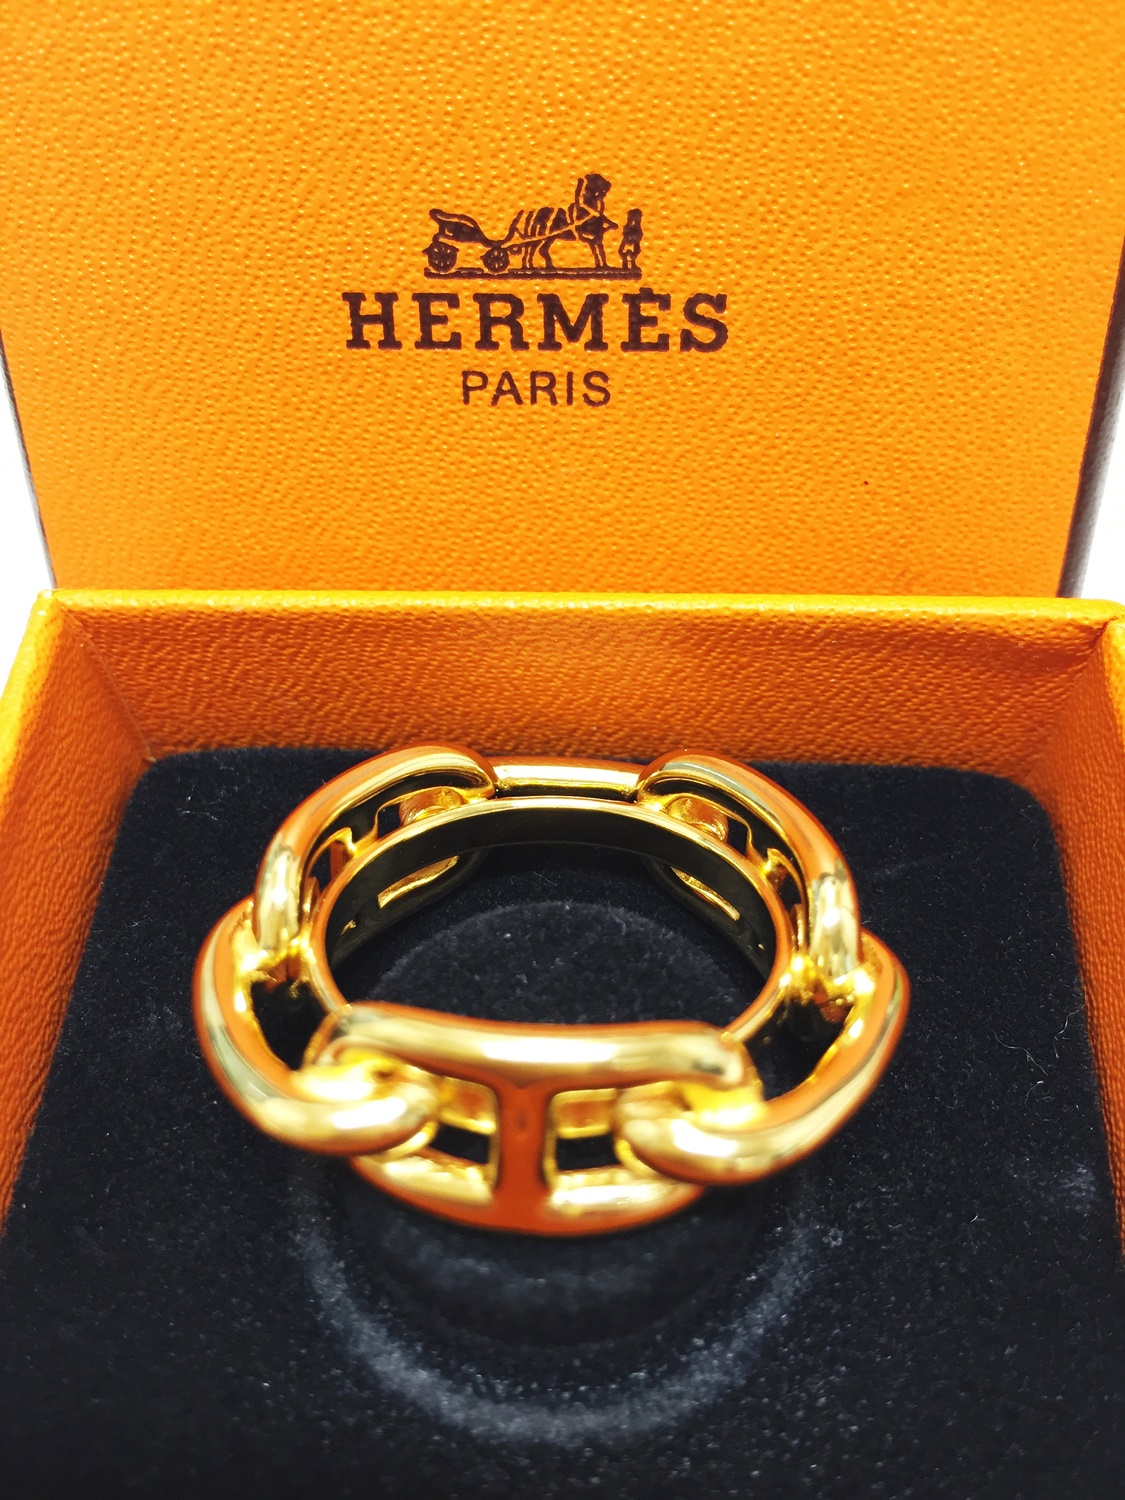 【質屋 買取】Hermès スカーフリングを お買取【葛飾区高価買取No1宣言！】 | 質屋かんてい局 亀有店